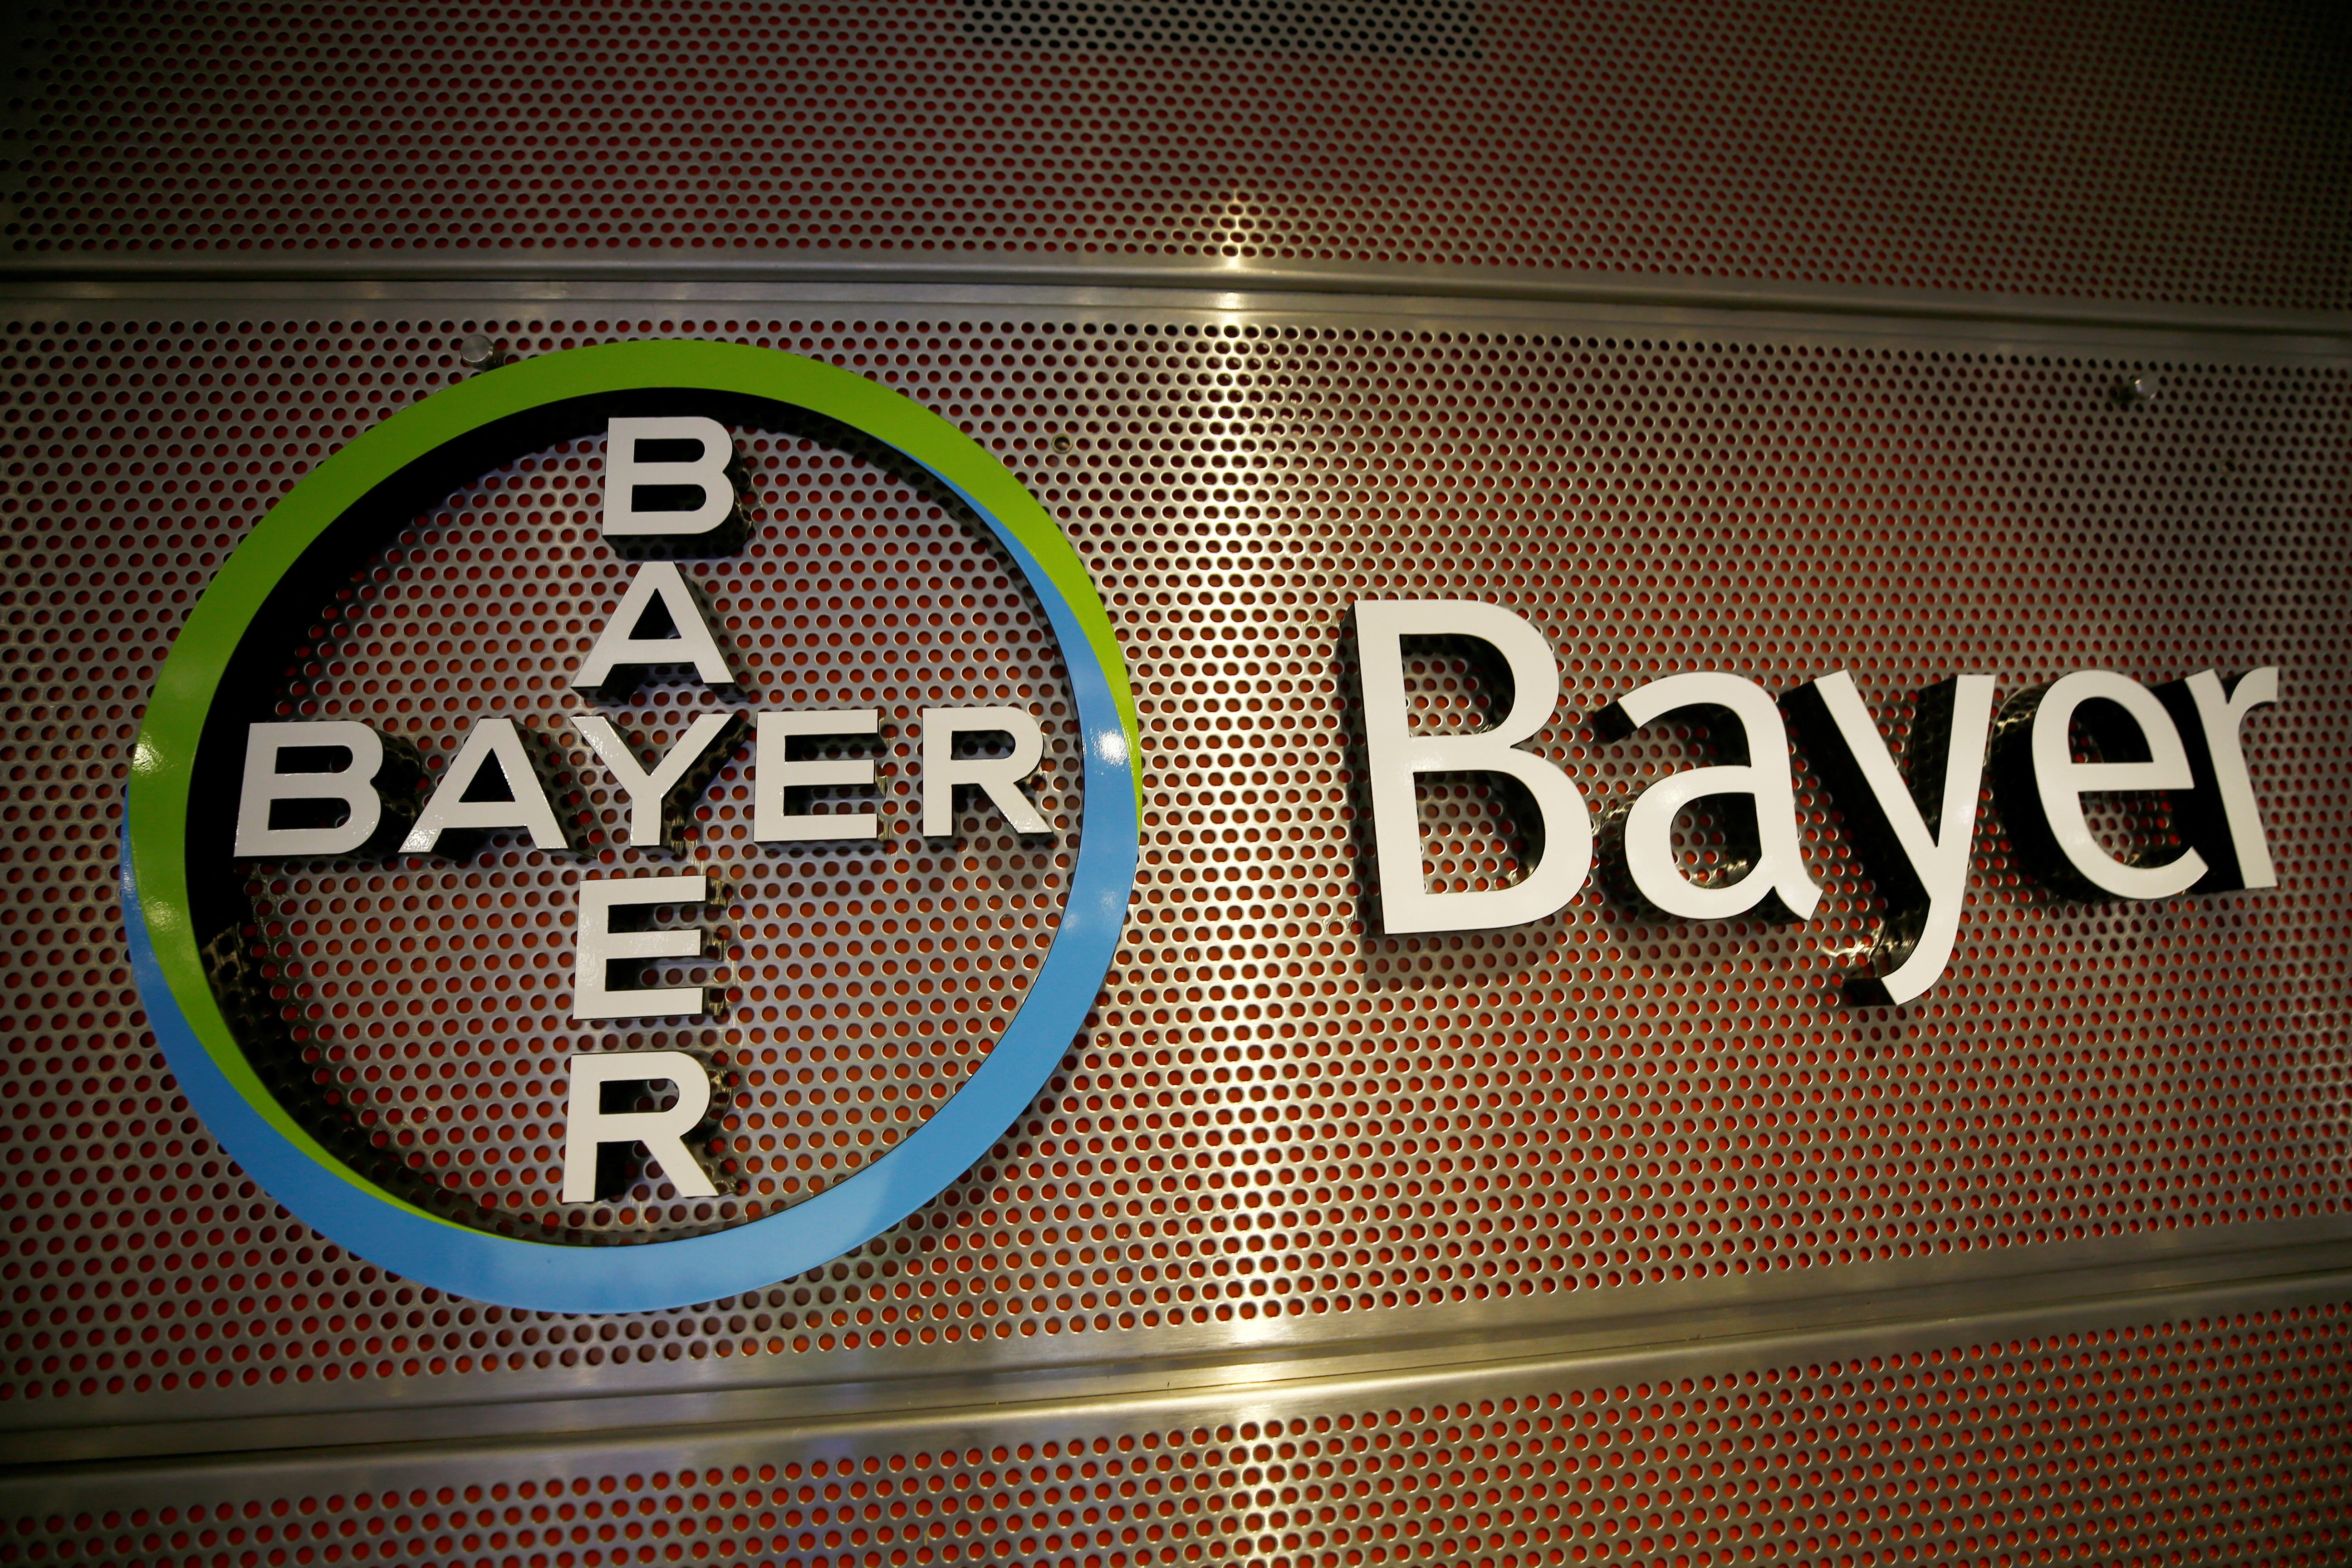 L'Asundexian, l'anticoagulant qui devait remplir les caisses de Bayer fait chuter le cours en Bourse